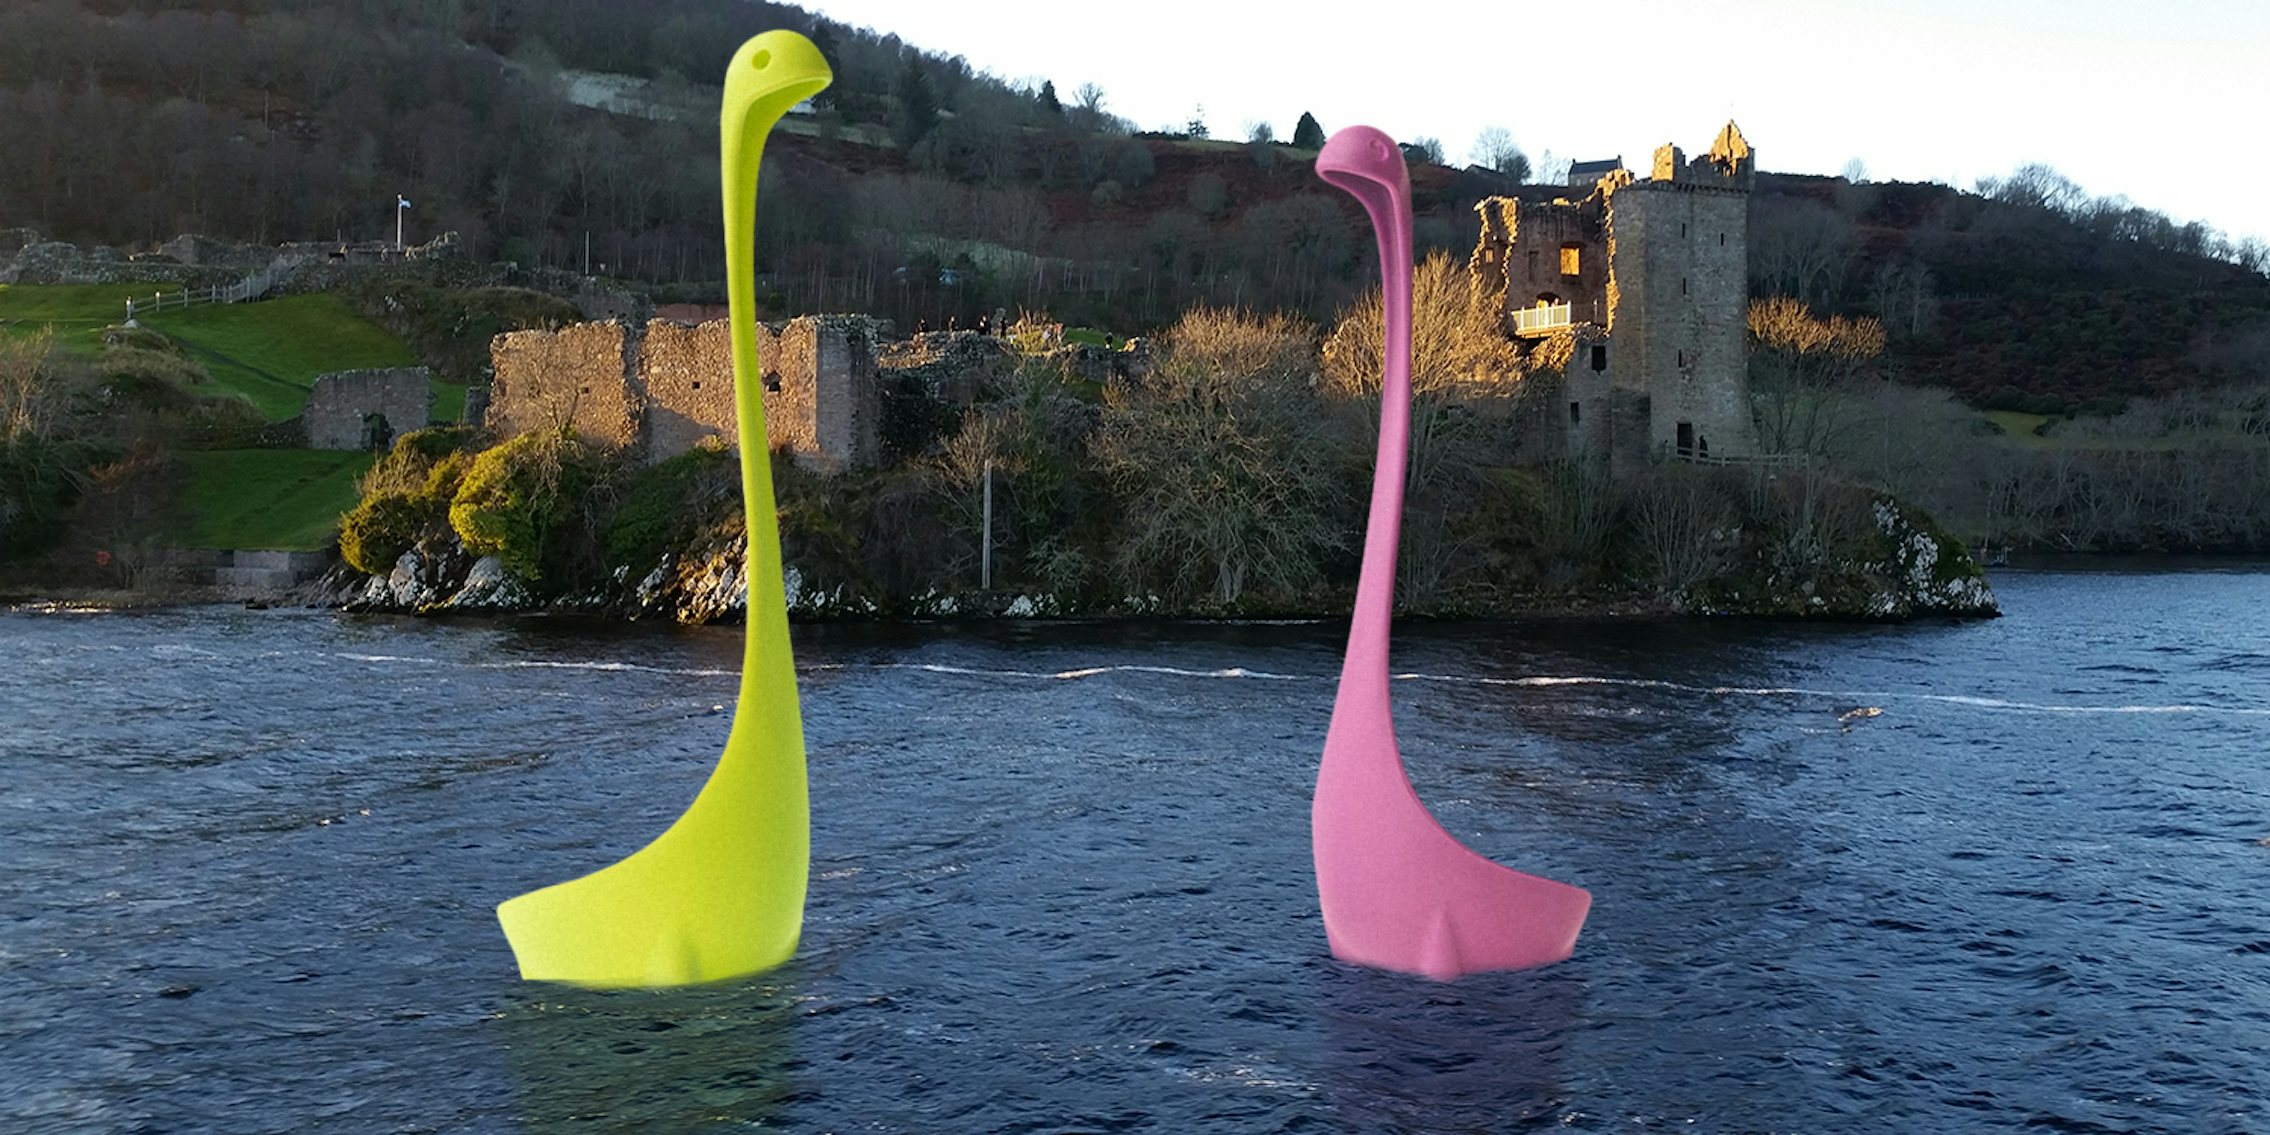 Loch Ness Ladles